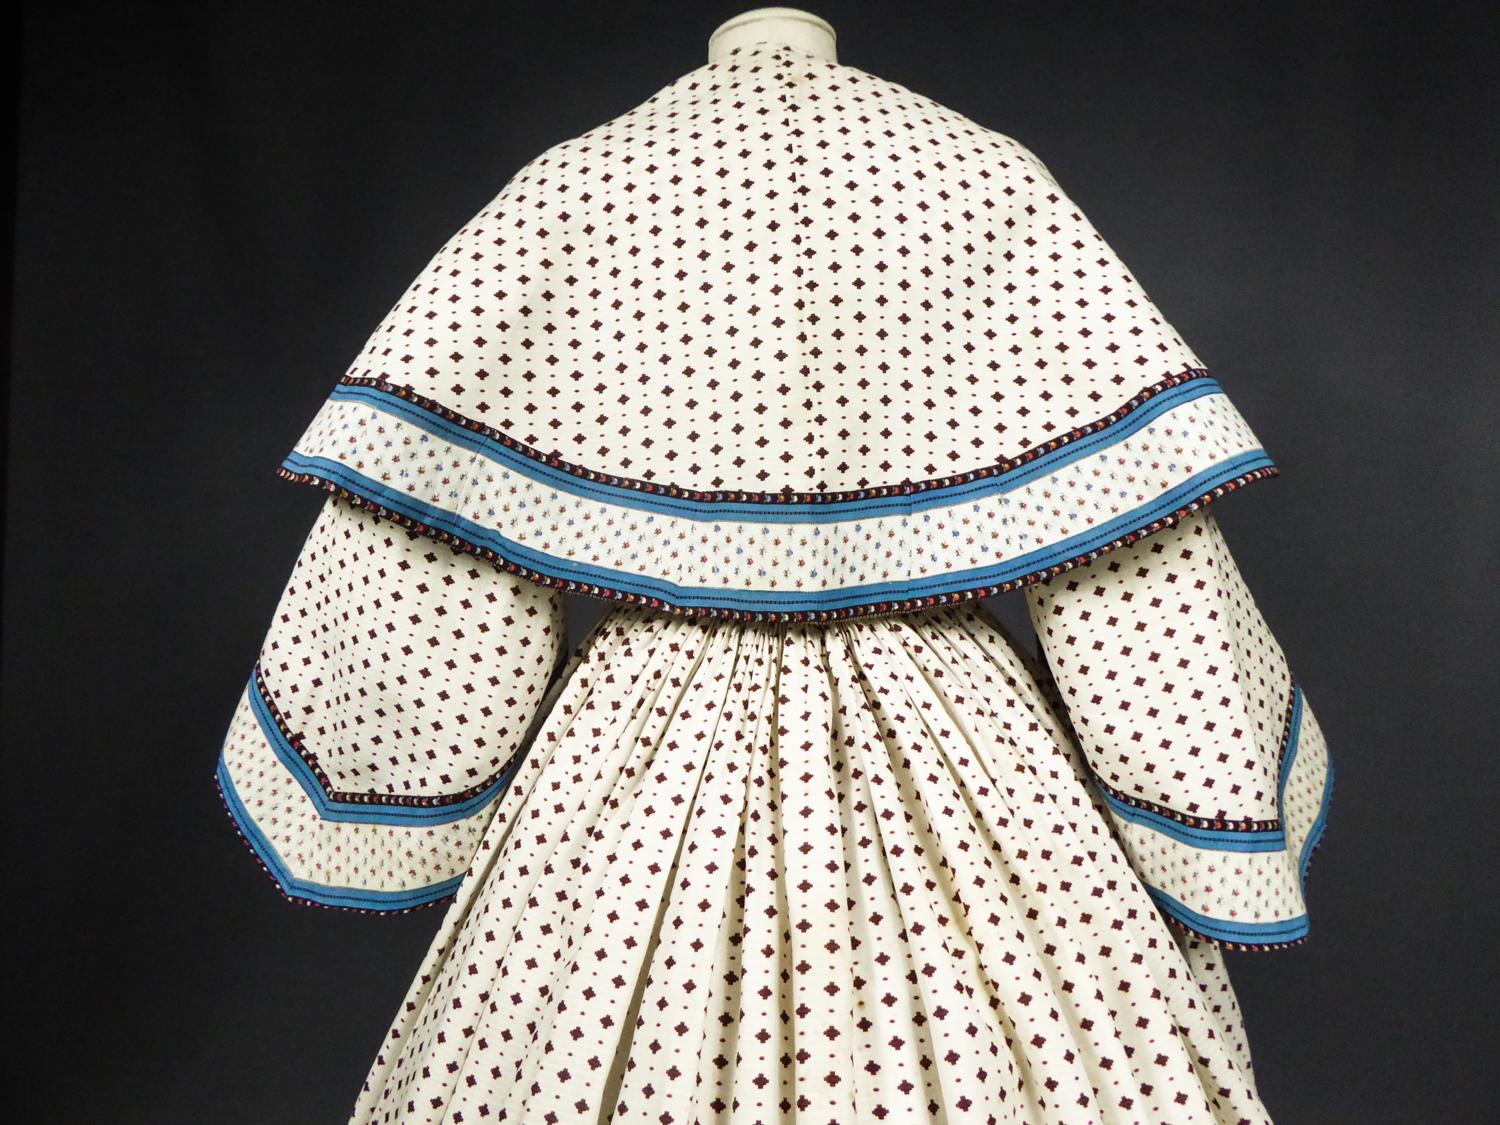 A Printed Cotton Crinoline Day Dress - France Napoleon III Period Circa 1865 6